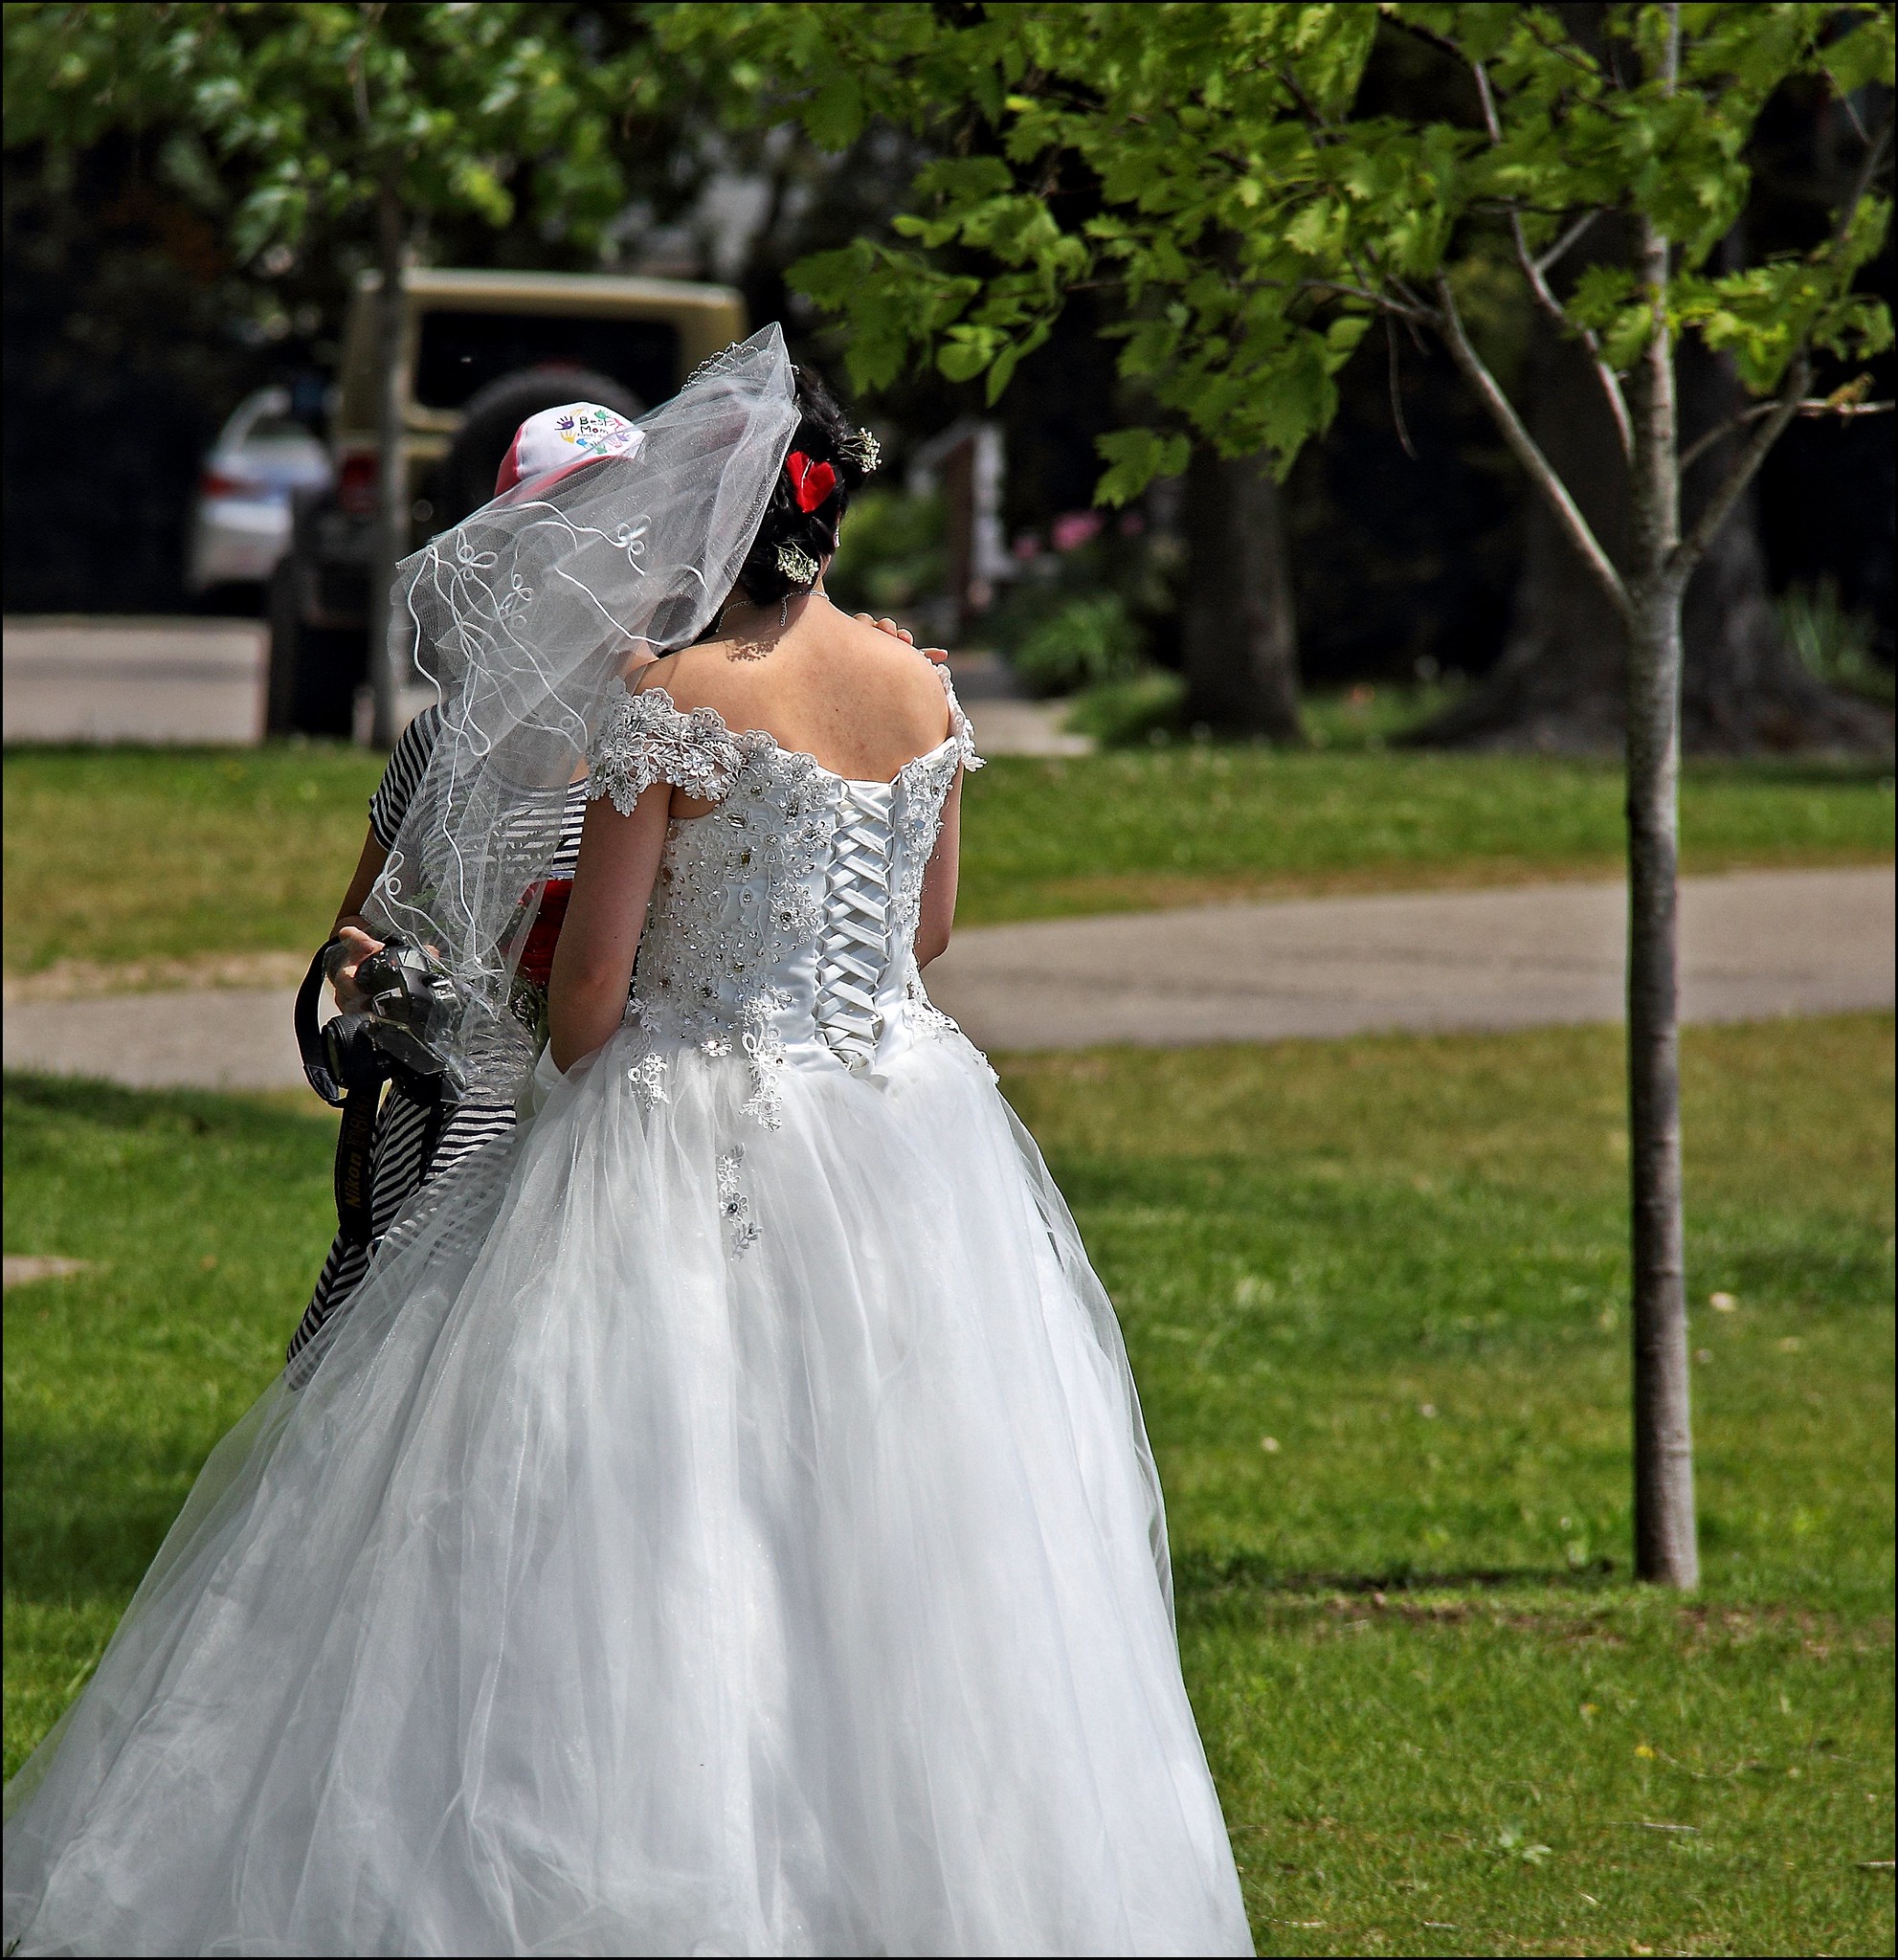 Vue arrière d'une mariée debout à l'extérieur | Source : Flickr